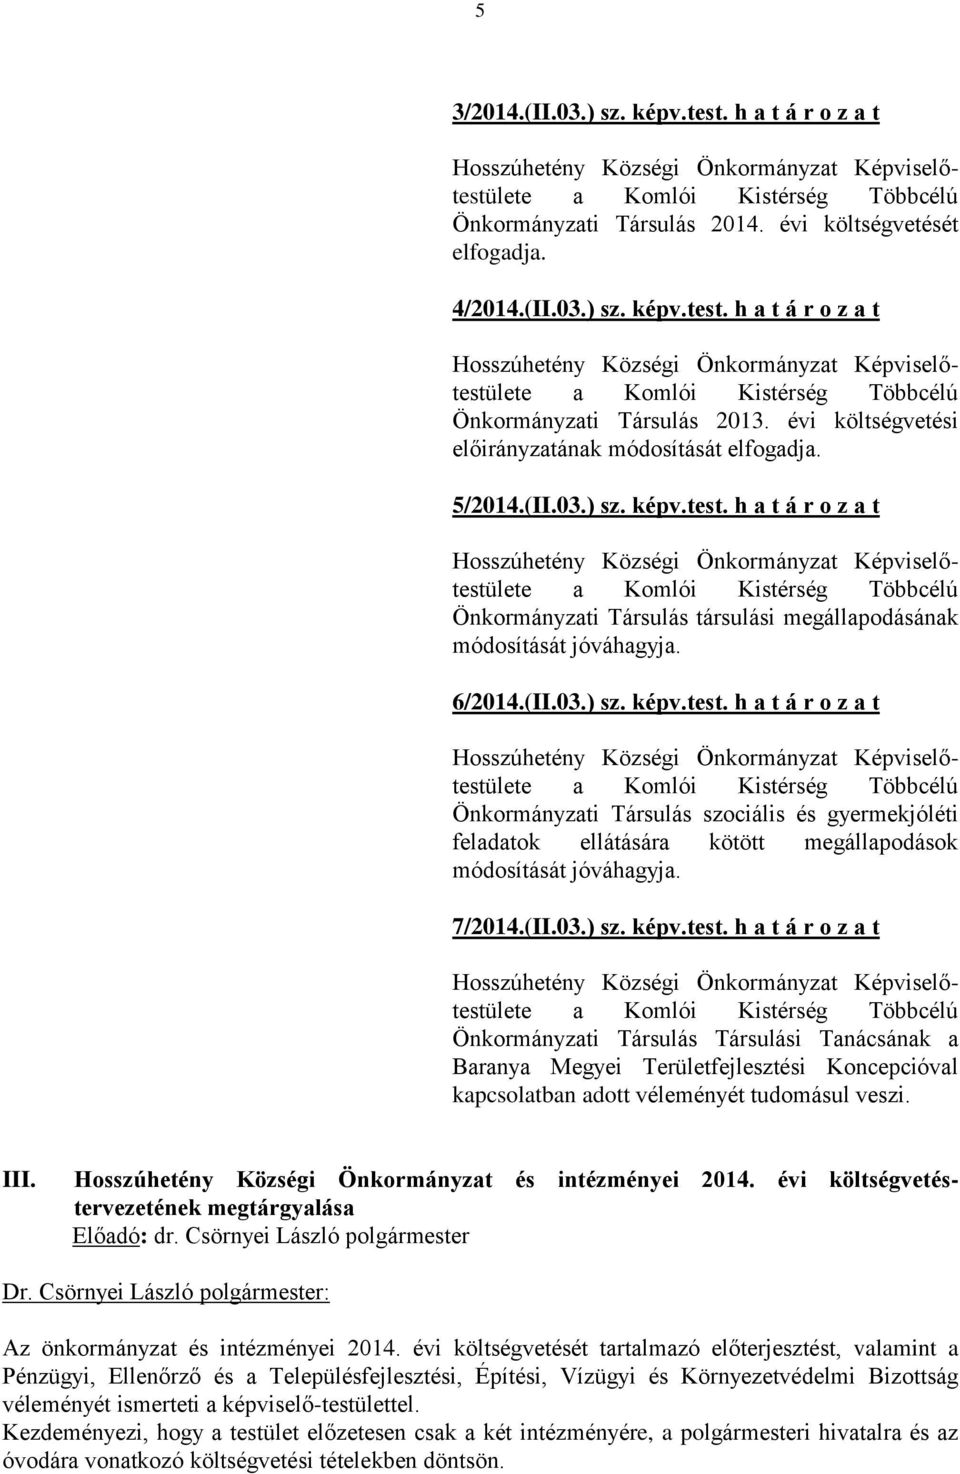 h a t á r o z a t Önkormányzati Társulás társulási megállapodásának módosítását jóváhagyja. 6/2014.(II.03.) sz. képv.test.